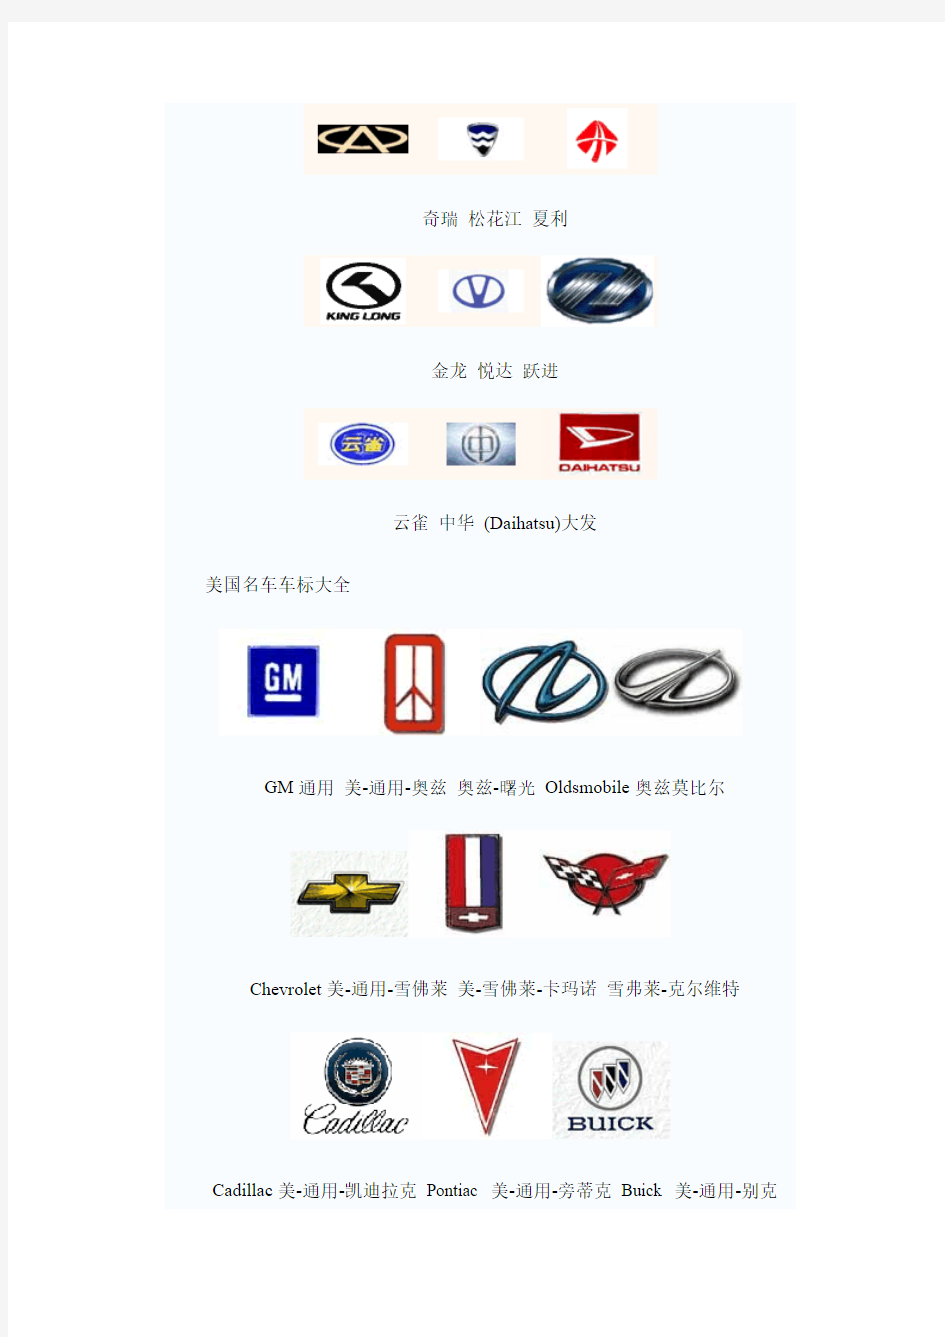 一些世界 名车和中国汽车品牌  标志汇总(包括历史介绍)